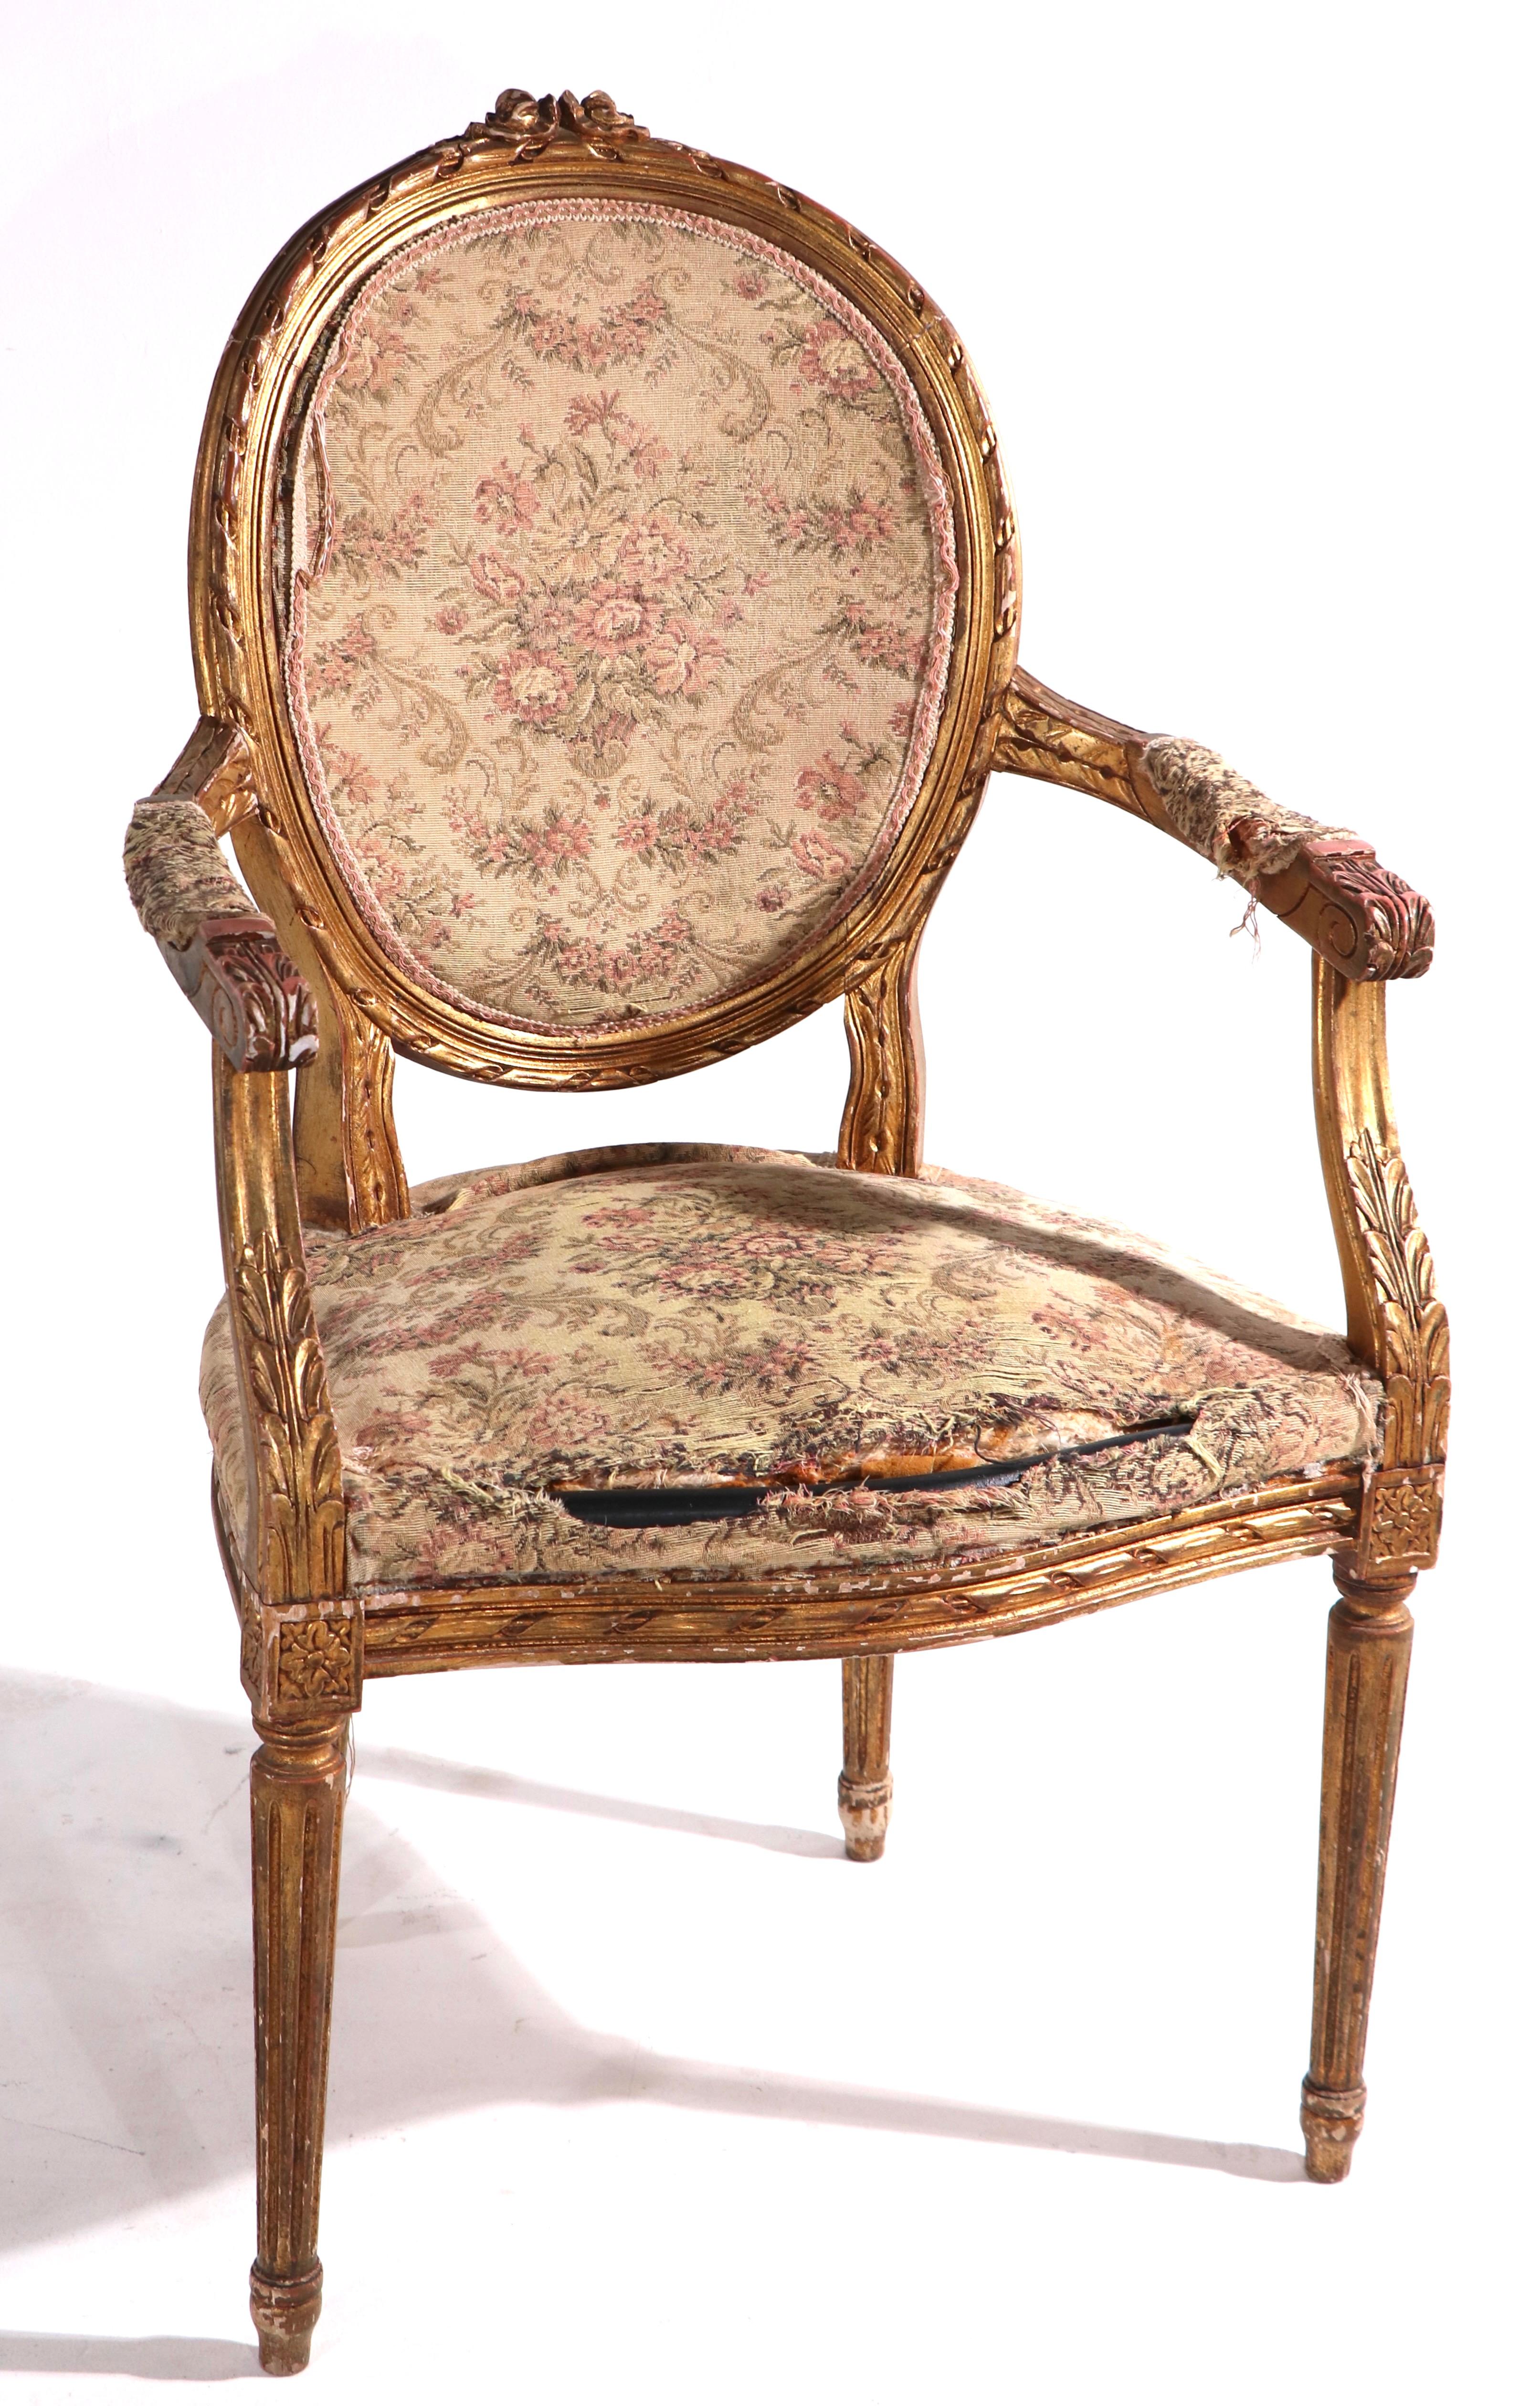 Wir glauben, dass es sich um einen vergoldeten Salonstuhl aus dem späten 19. oder frühen 20. Dieser elegant geschnitzte Holzarmlehnstuhl ist strukturell solide und stabil, er weist Abnutzungserscheinungen an der vergoldeten Oberfläche auf und muss